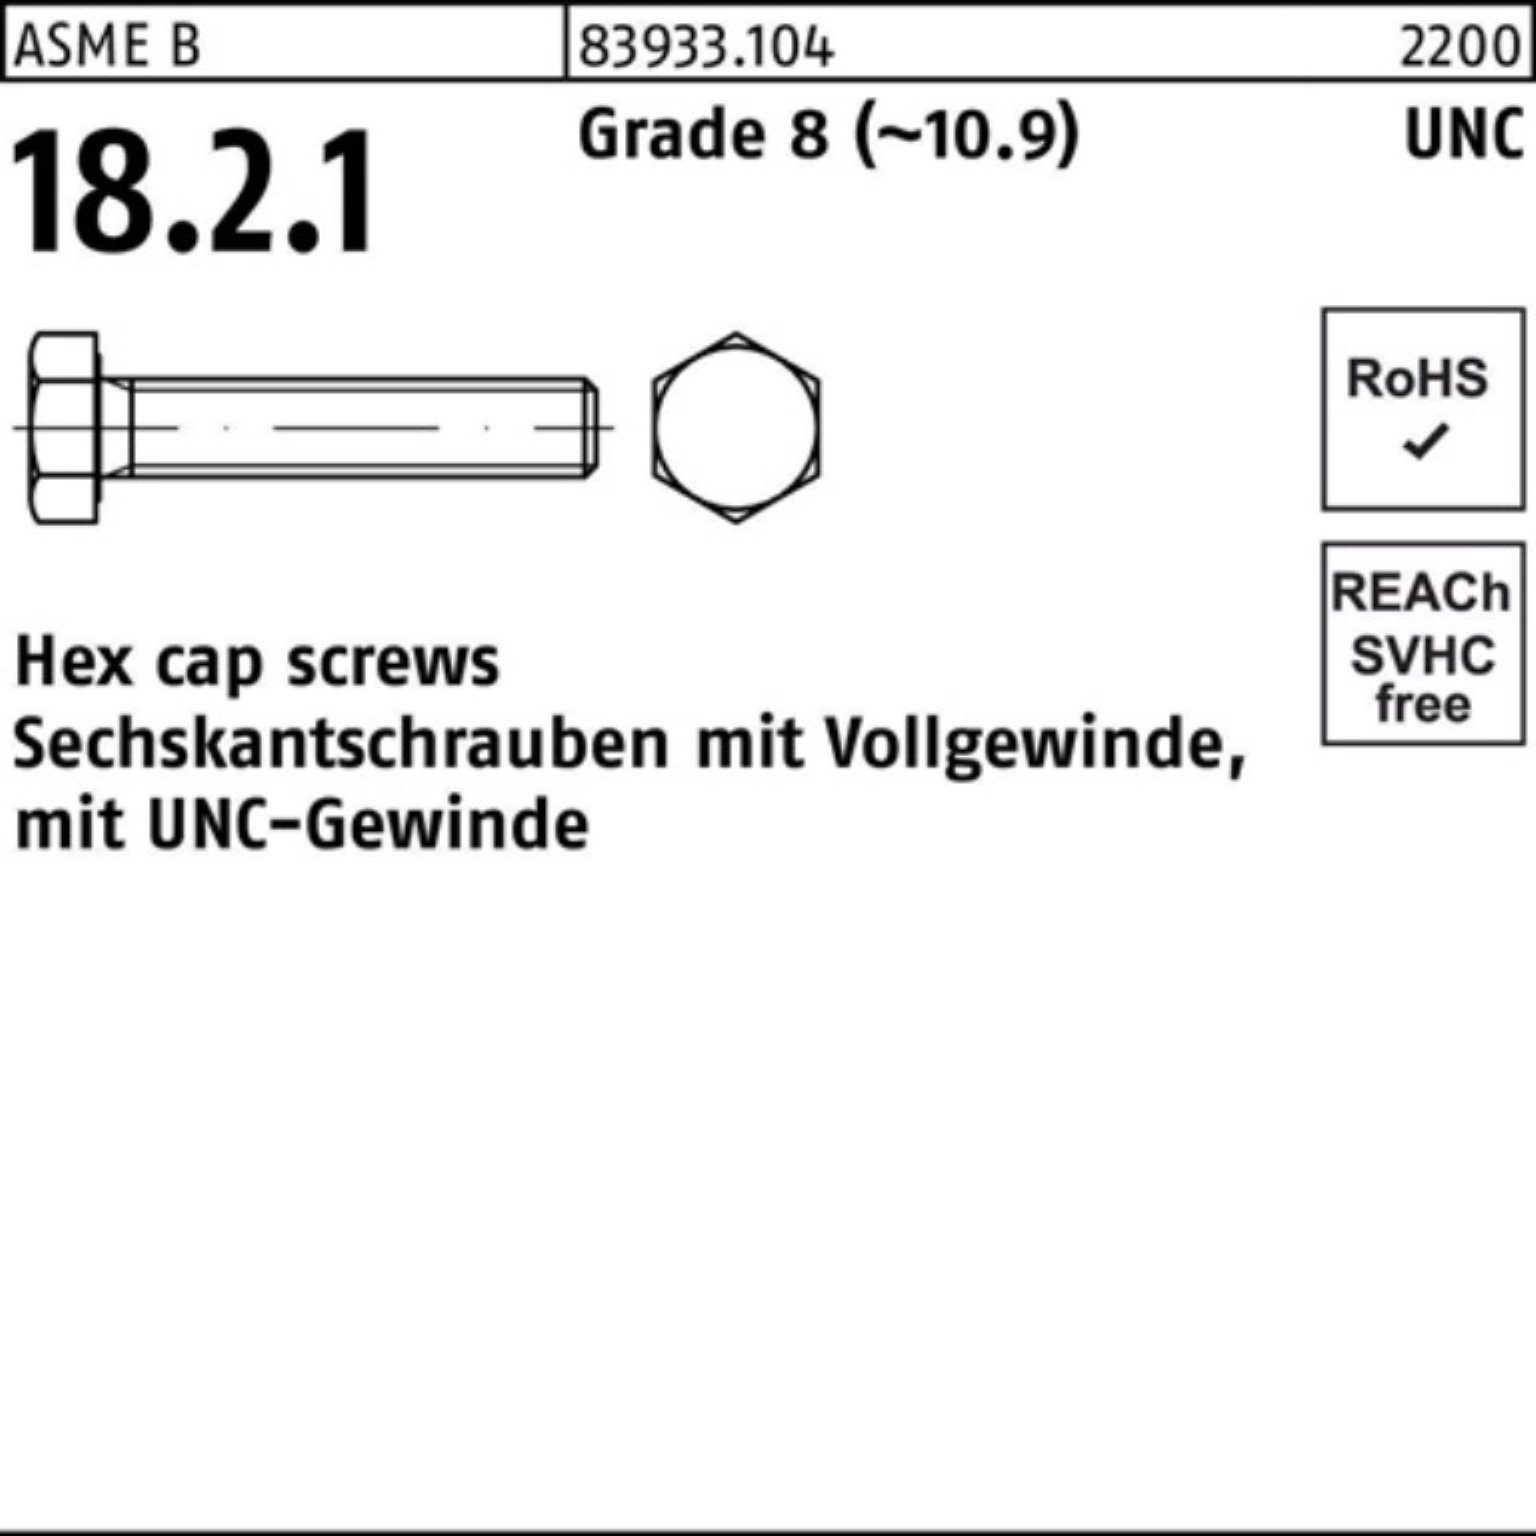 Reyher Sechskantschraube 100er Pack Sechskantschraube R 83933 UNC-Gewinde VG 1/4x 3/4 Grade 8